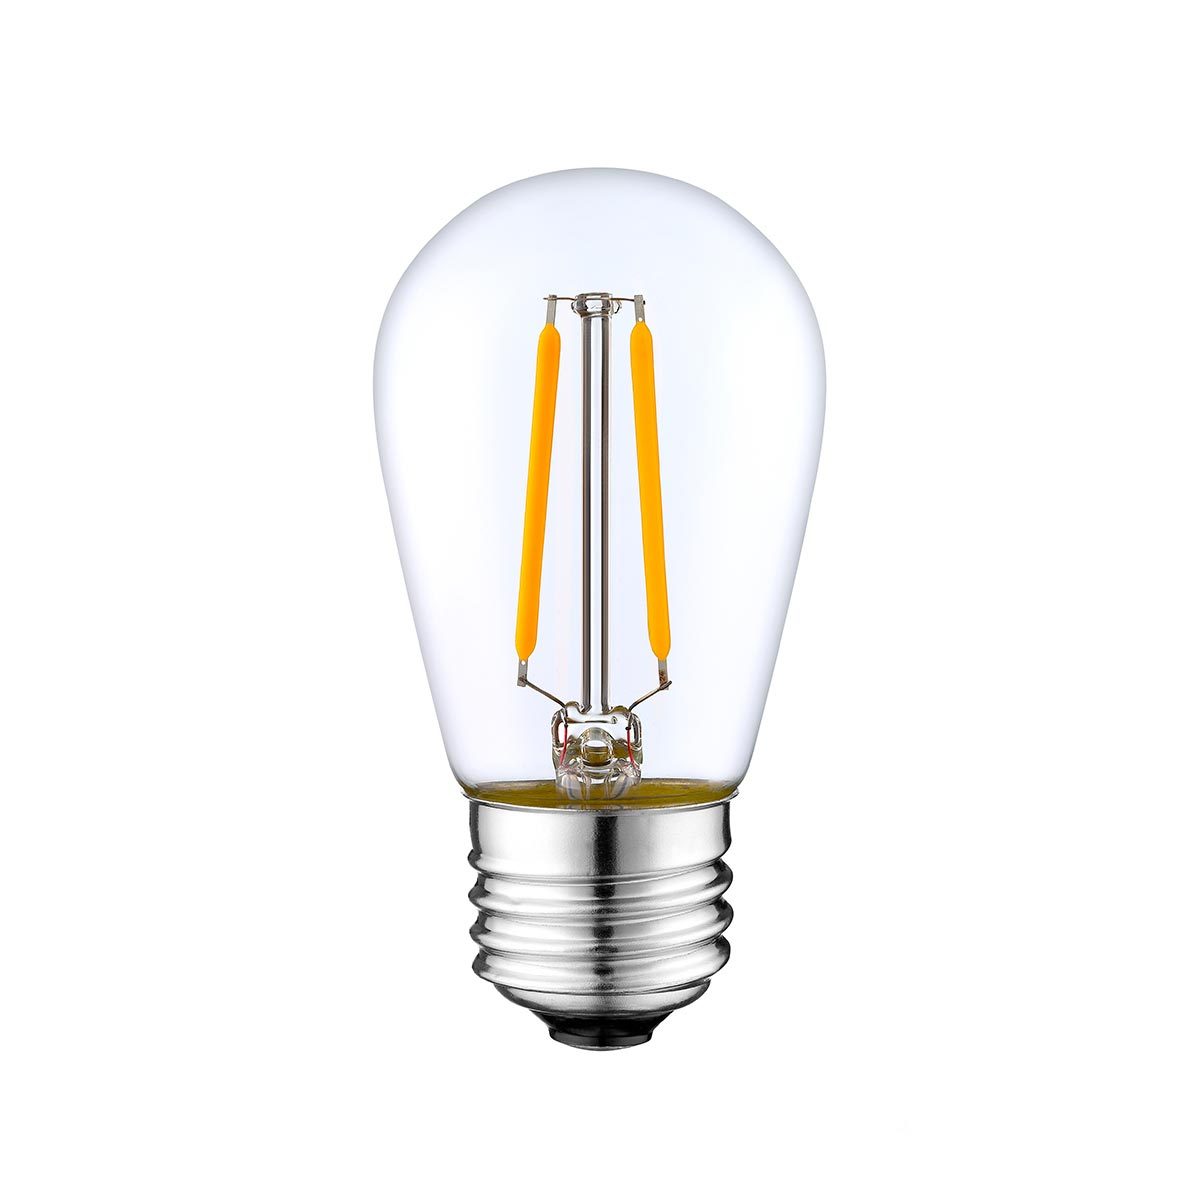 Lot de 100 Ampoule filament LED E27 blanc chaud XENA E27 S45 2W H10cm